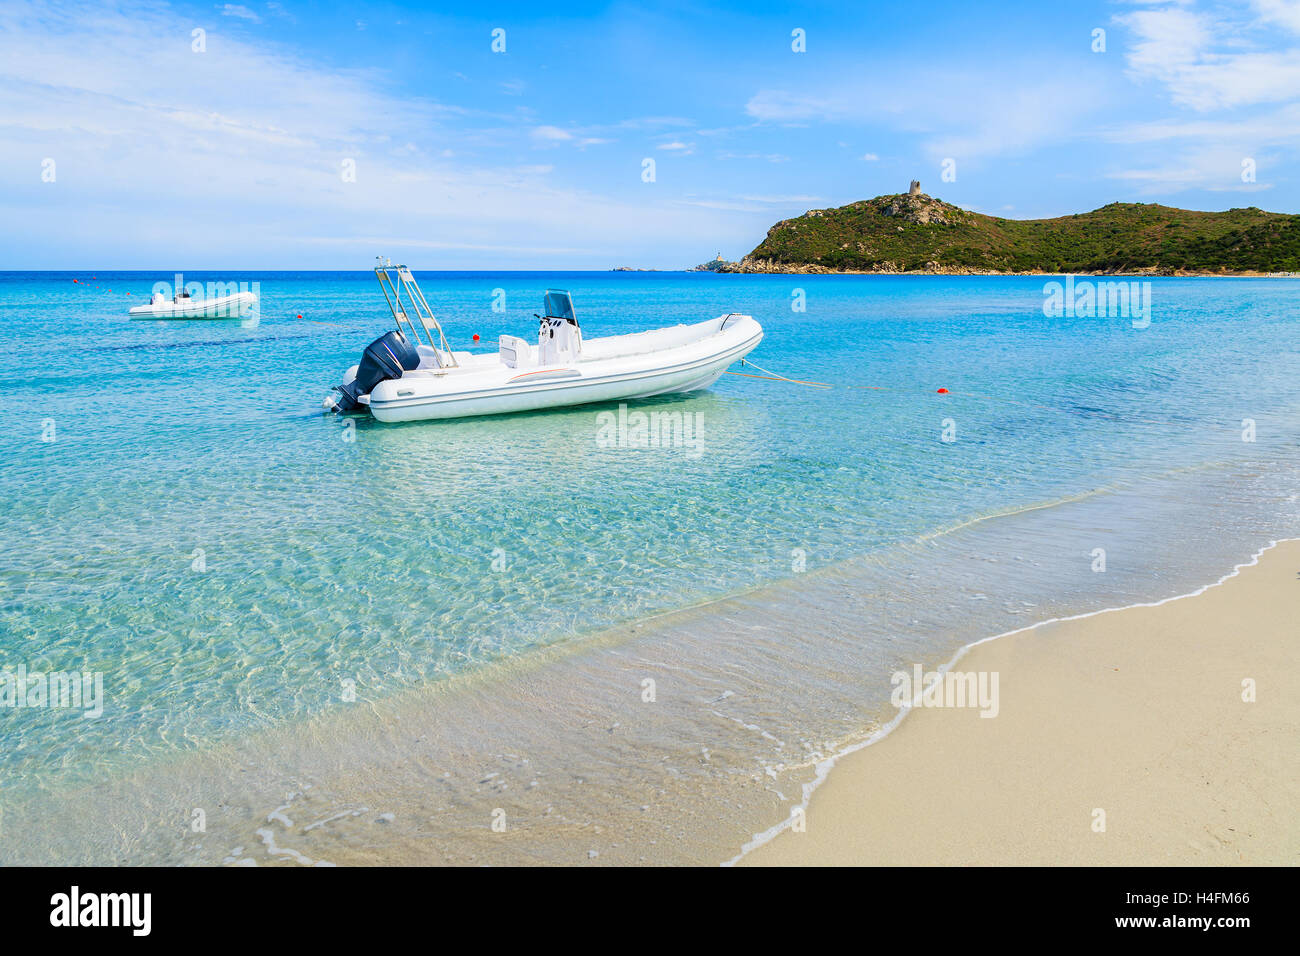 Bateau blanc sur la mer d'azur magnifique de l'eau de la baie de Porto Giunco, Sardaigne, île, Italie Banque D'Images